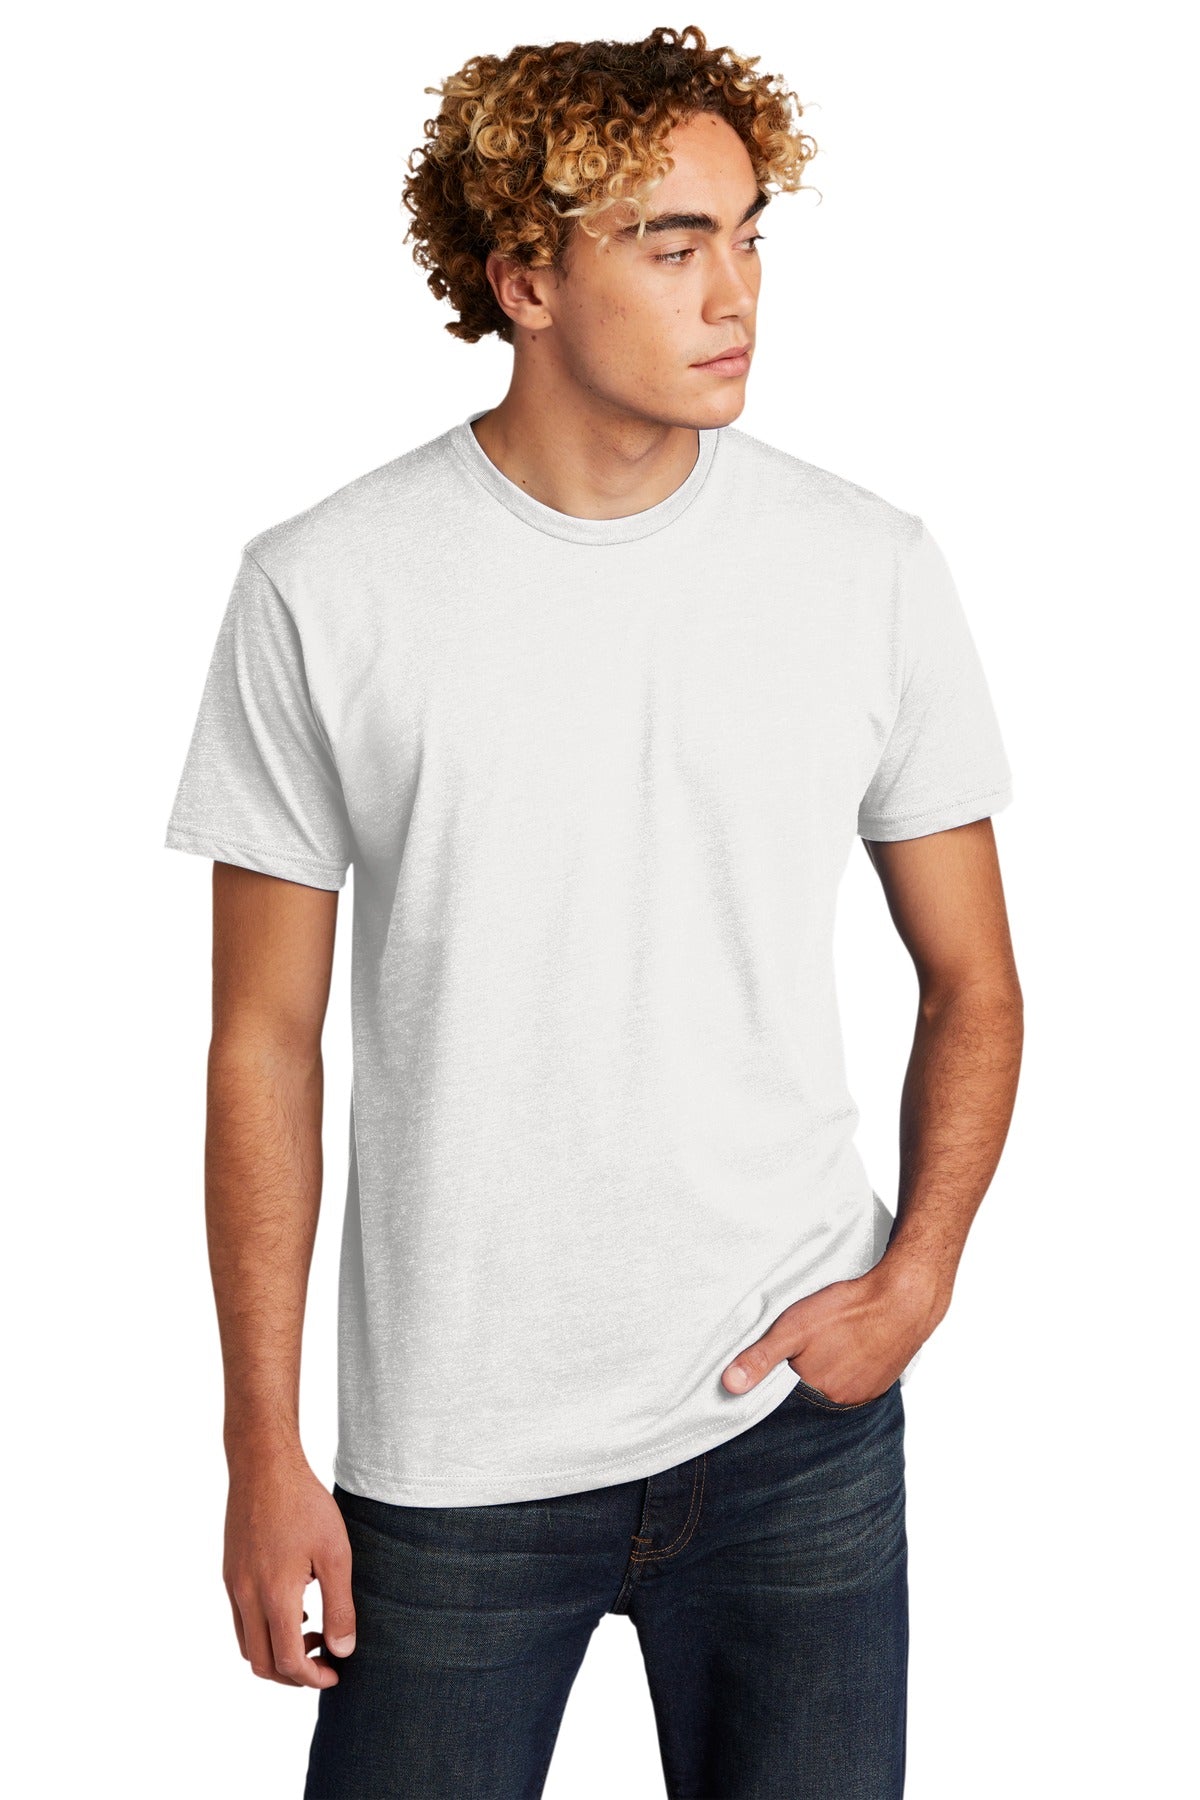 T-Shirts White Next Level